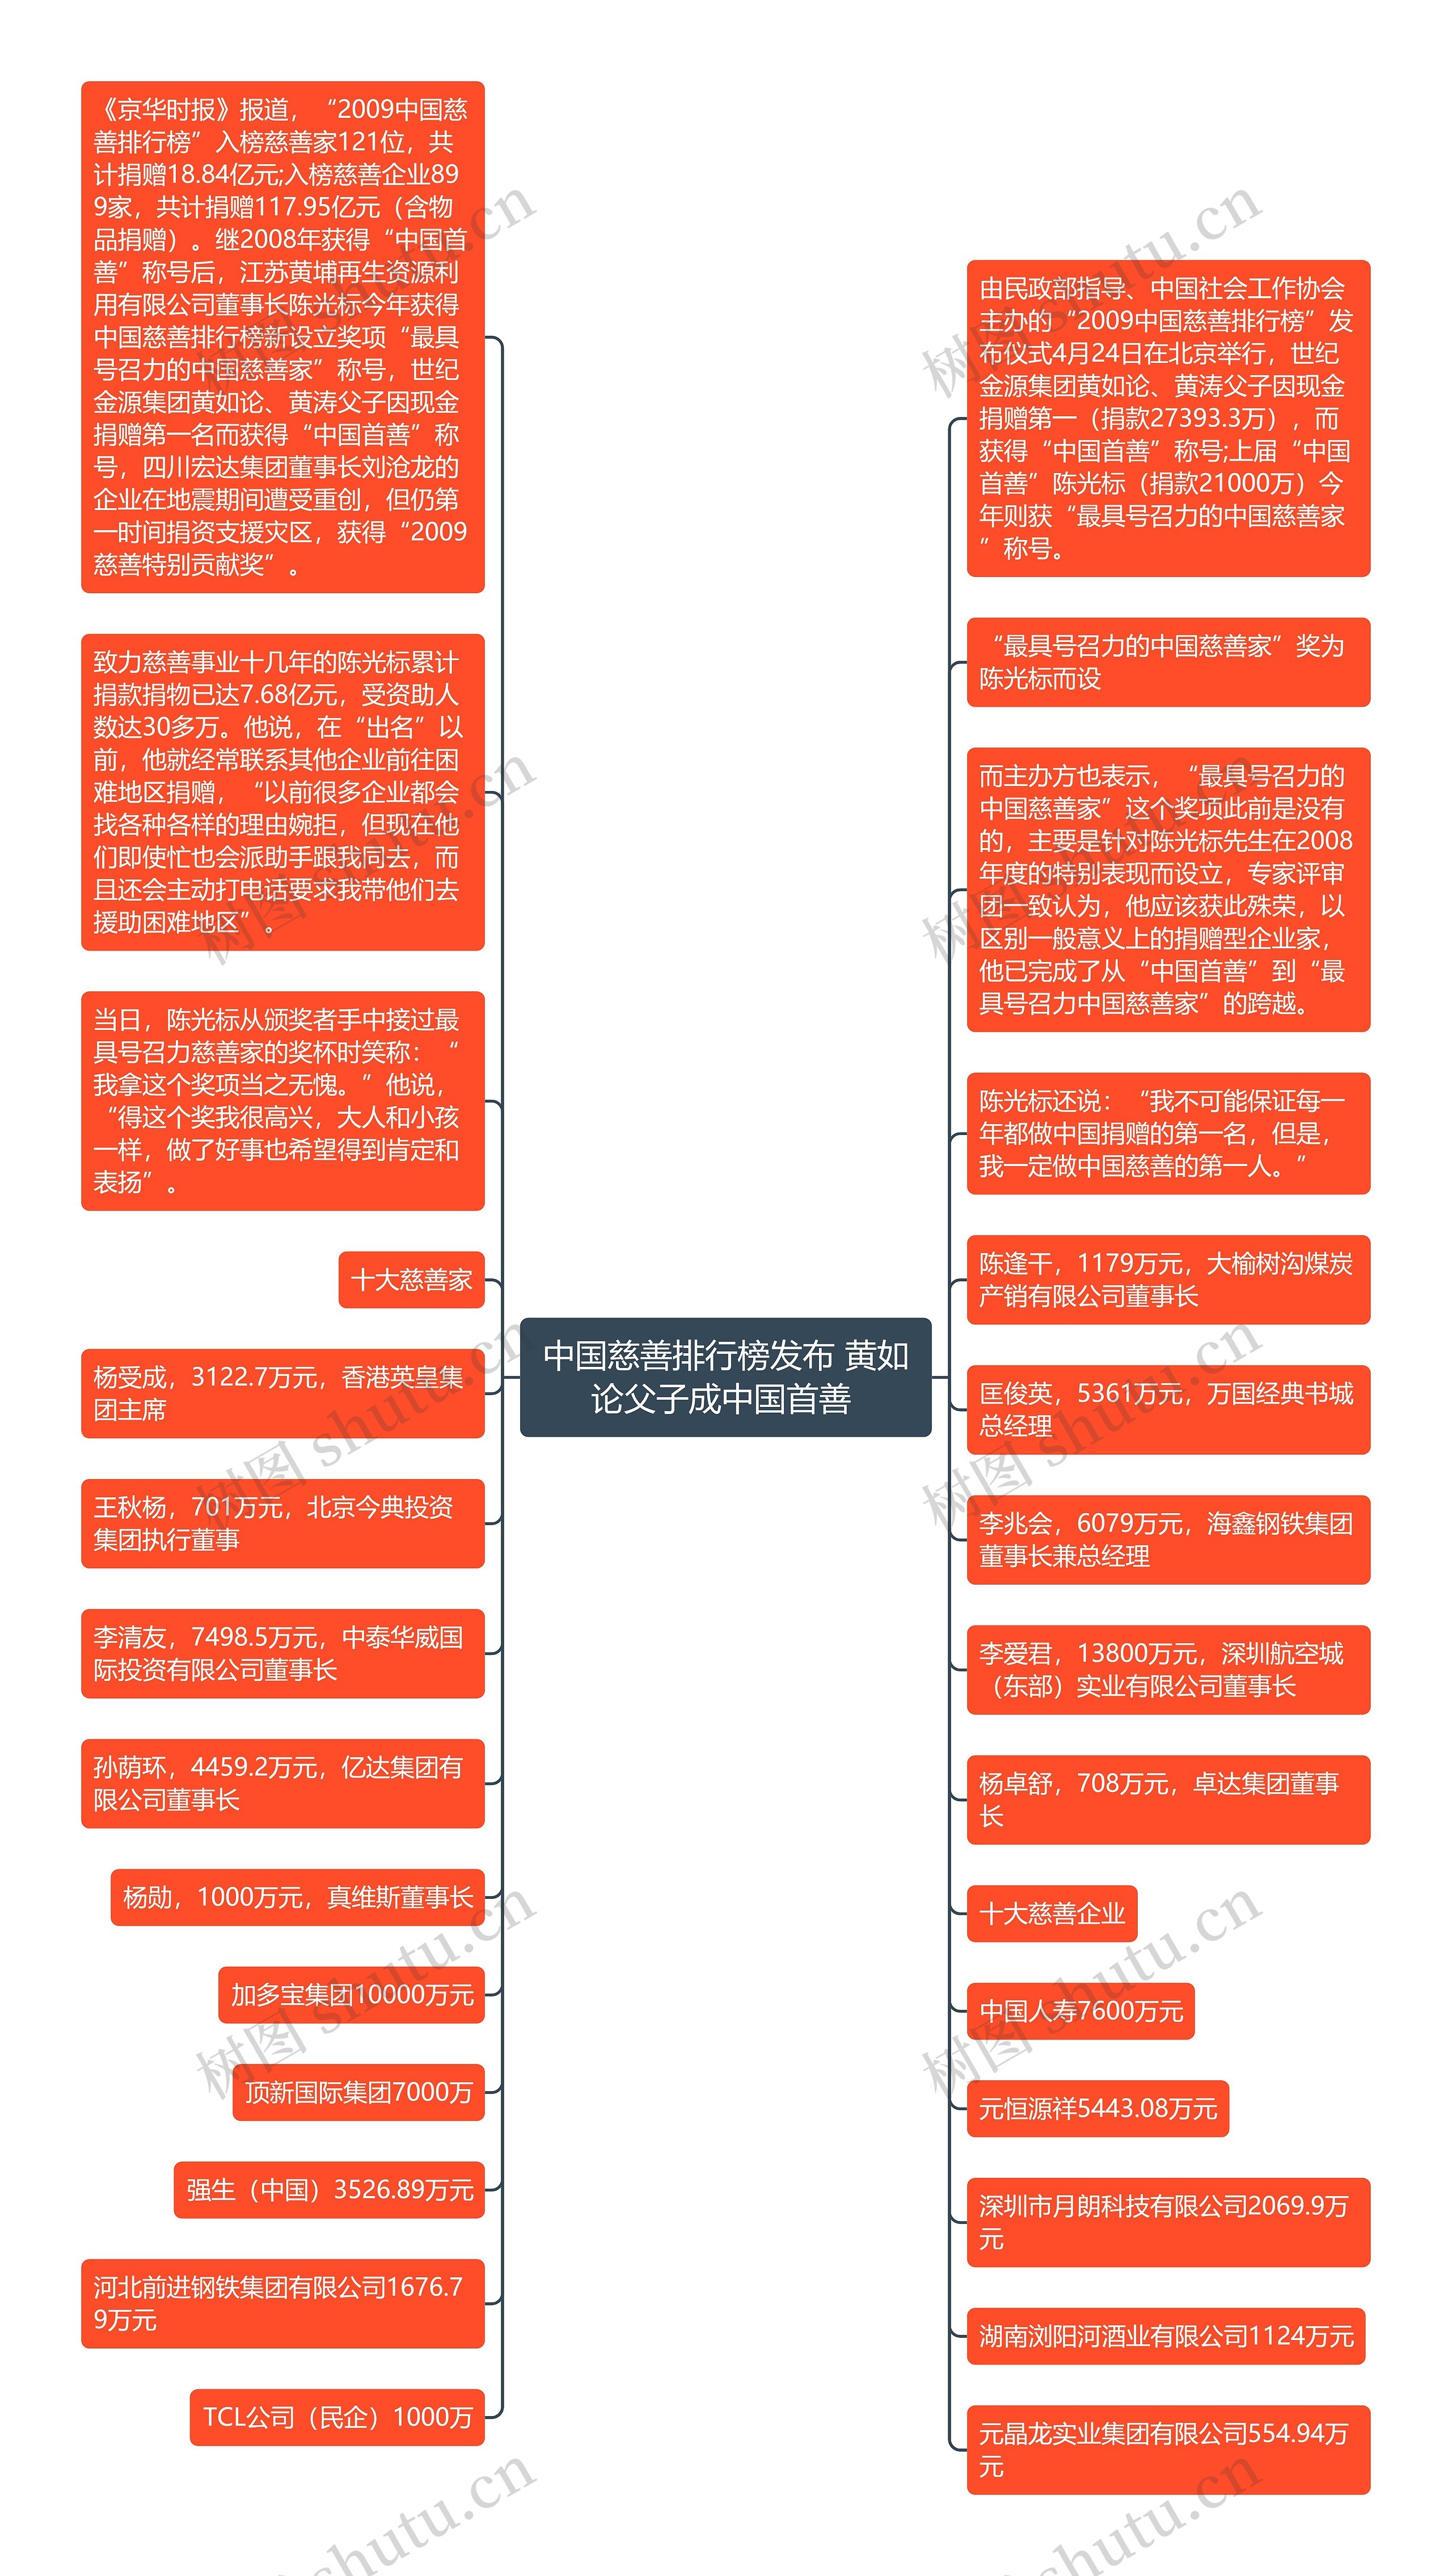 中国慈善排行榜发布 黄如论父子成中国首善 思维导图